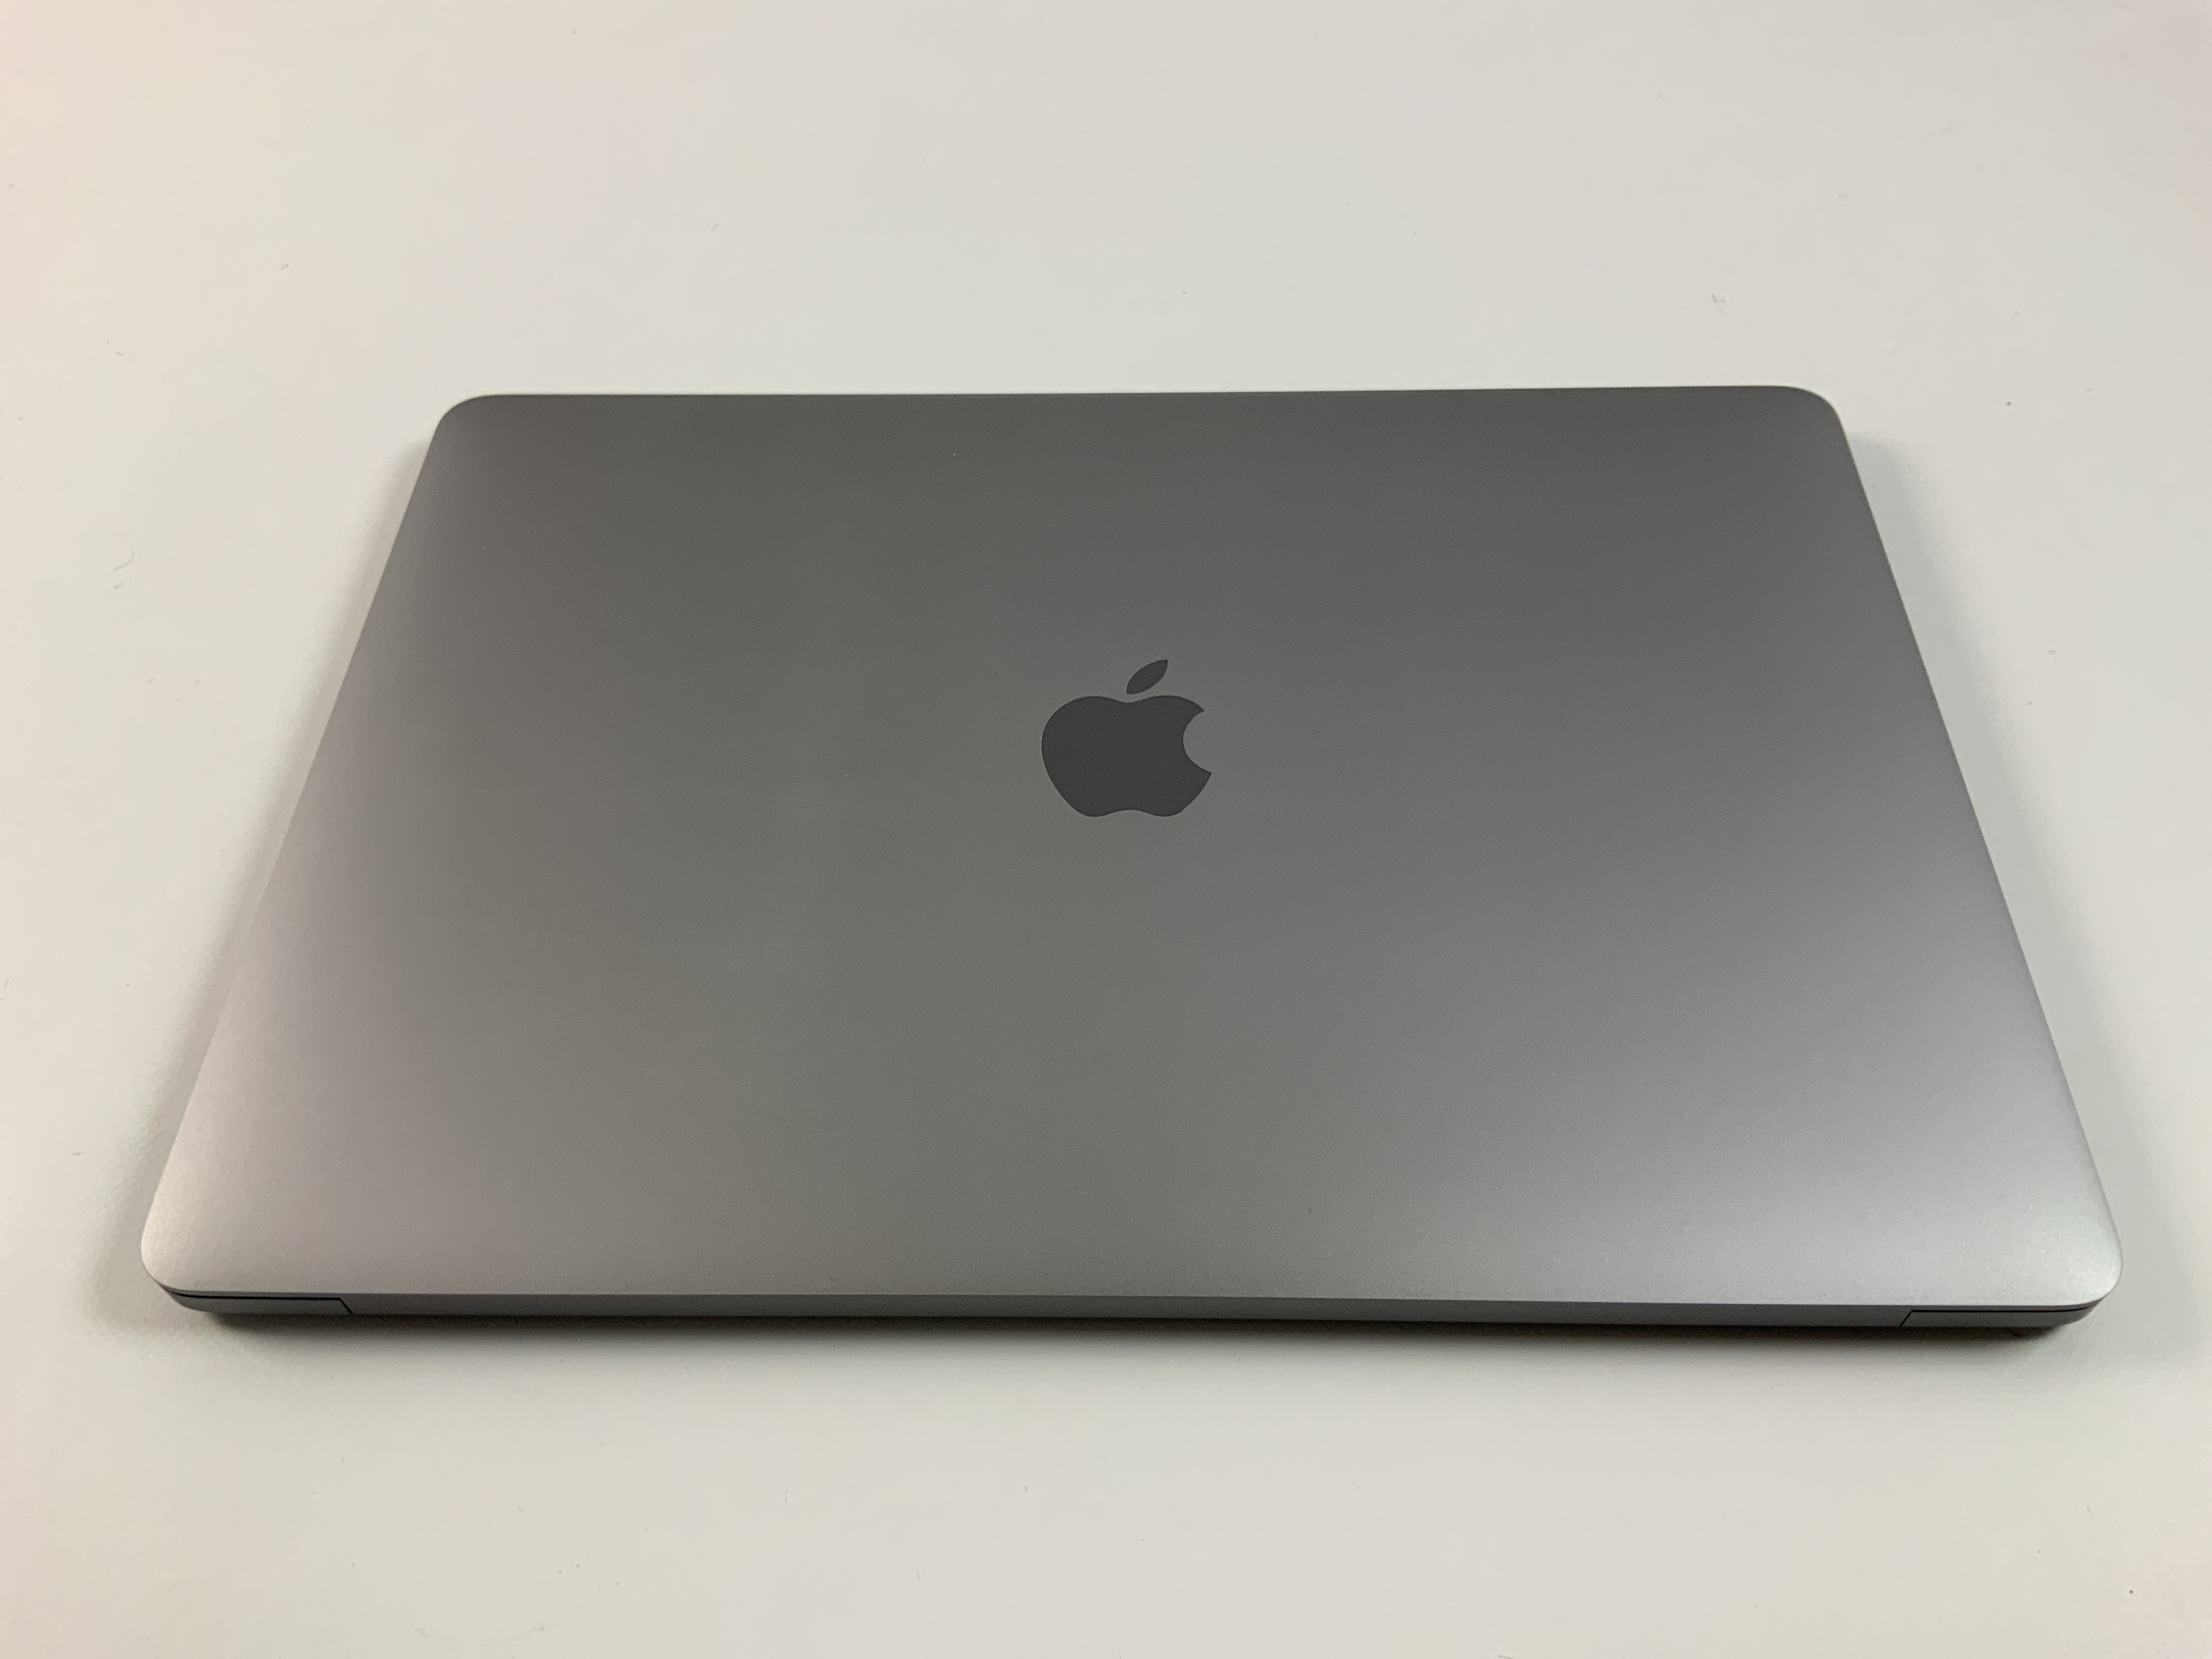 MacBook Pro 13" 4TBT Mid 2019 (Intel Quad-Core i7 2.8 GHz 16 GB RAM 256 GB SSD), Space Gray, Intel Quad-Core i7 2.8 GHz, 16 GB RAM, 256 GB SSD, Afbeelding 2